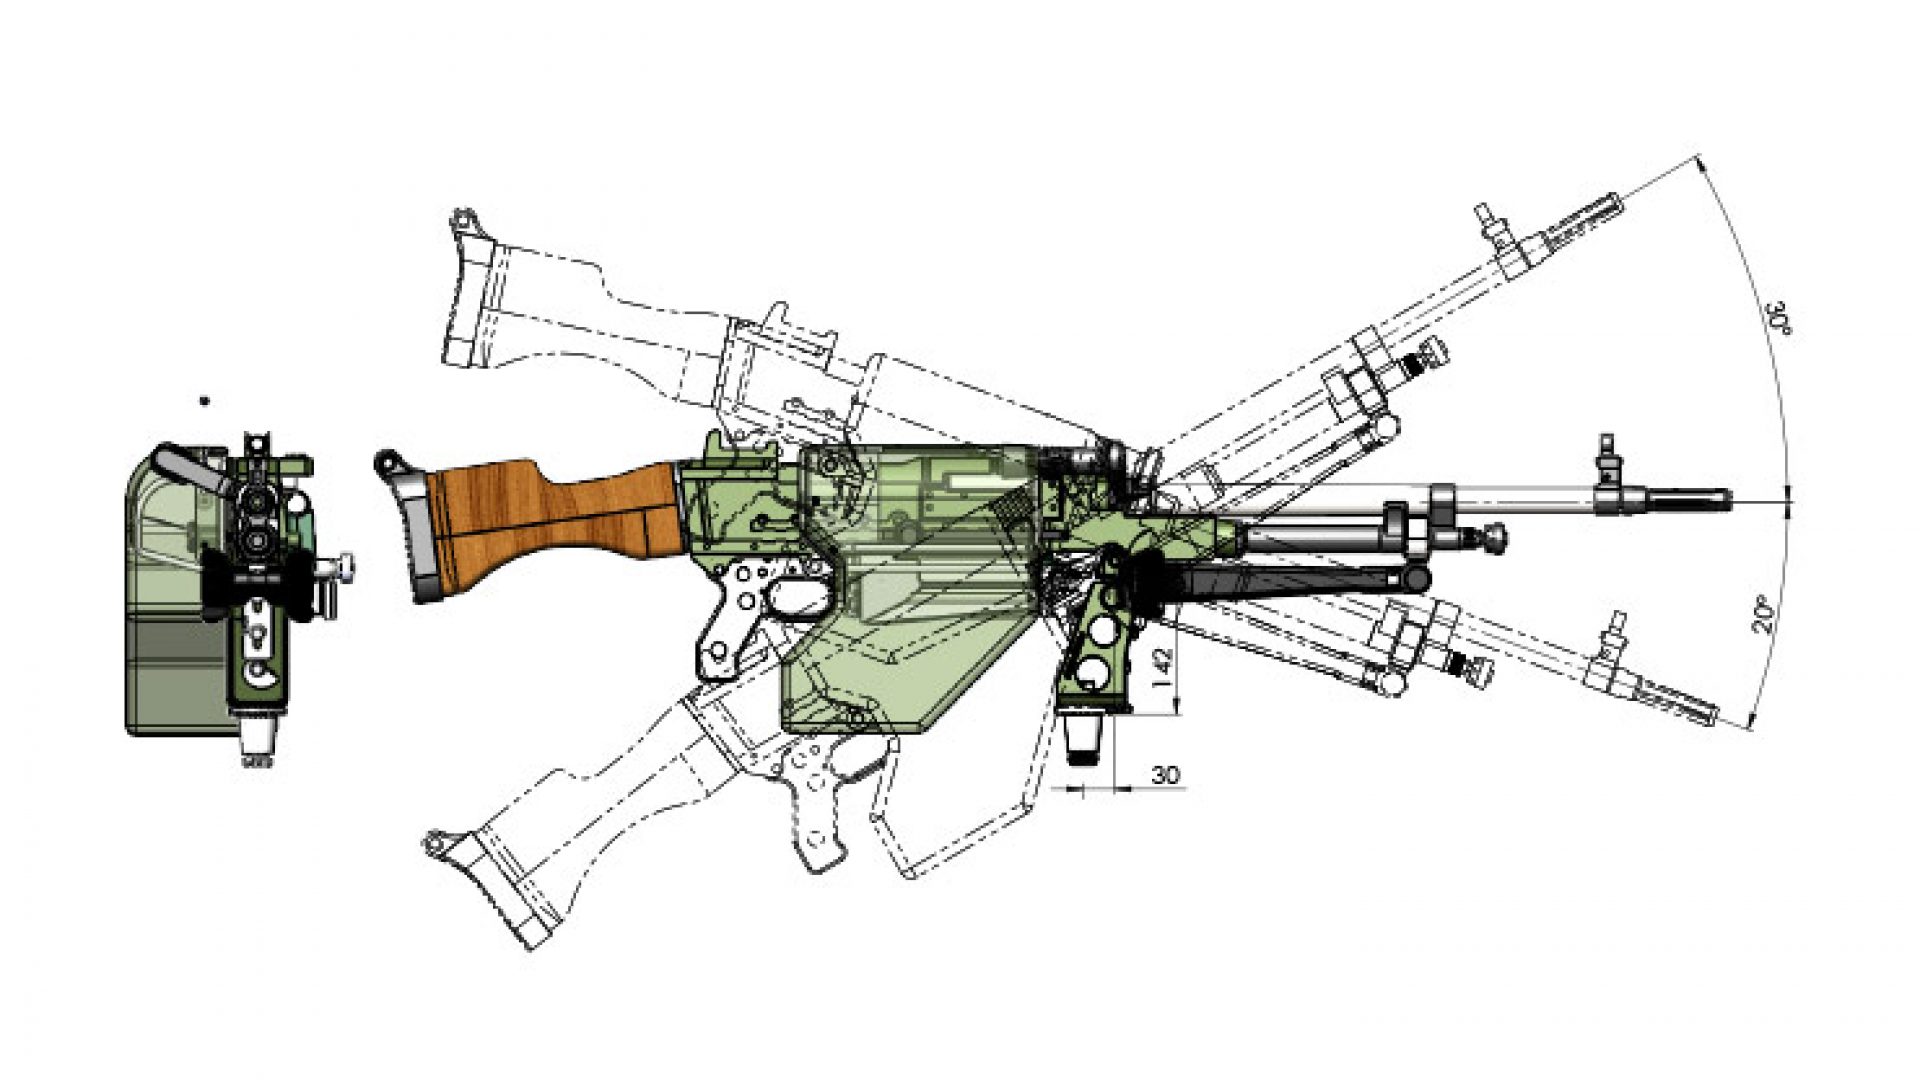 svekon weaponmount 16 fn mag 7.62mm